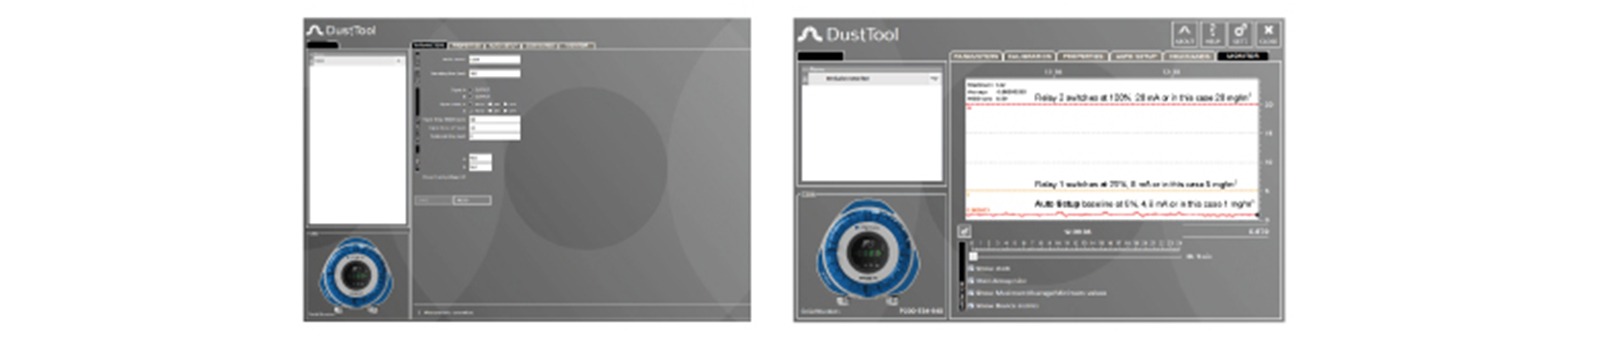 software de configuración dusttool